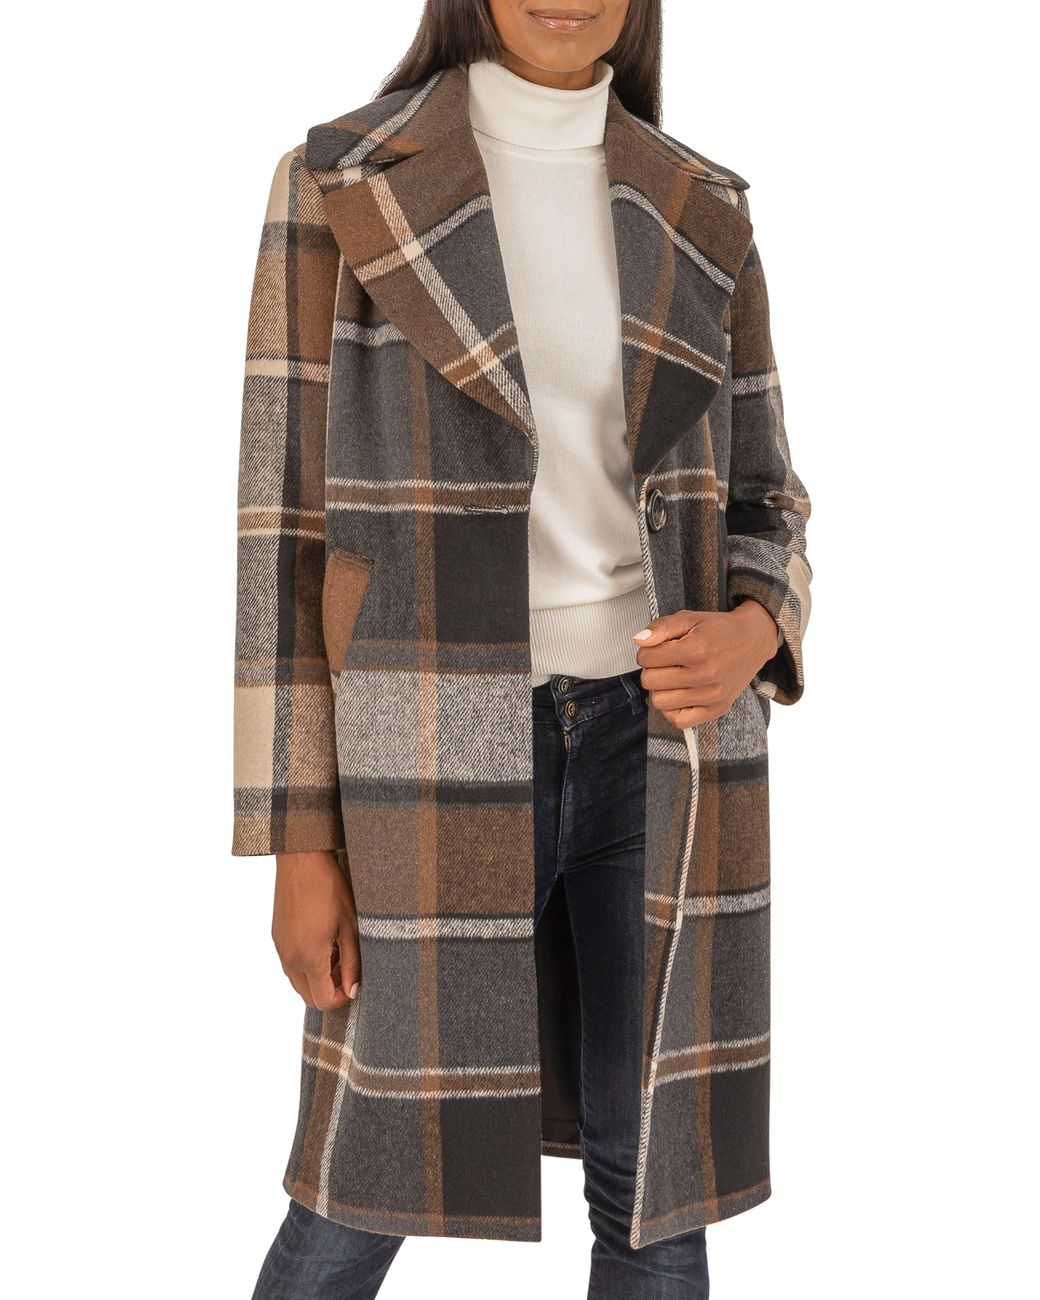 Kensie Coat In Brown Plaid At Nordstrom Rack | Lyst